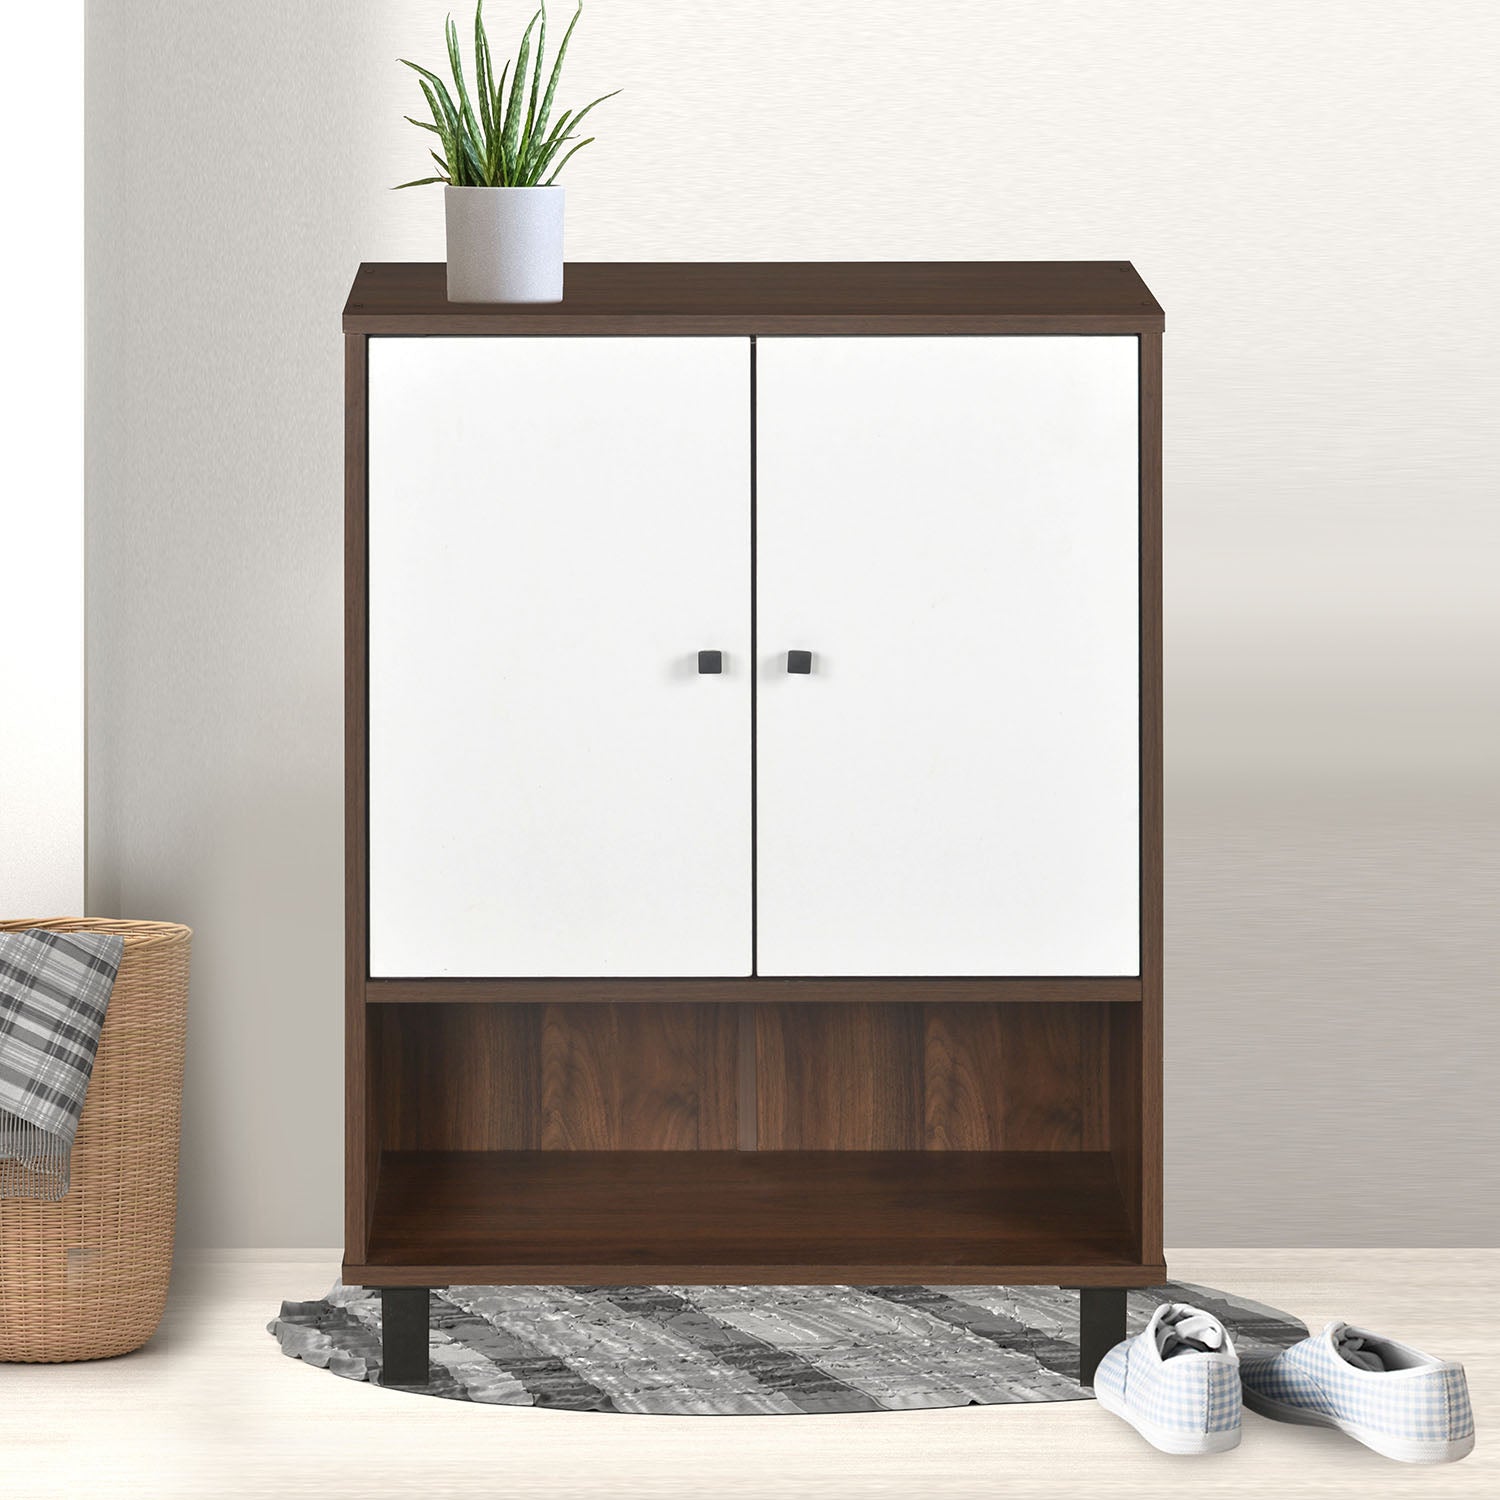 Buy Wesley Big Shoe Cabinet (Wenge)Online- At Home by Nilkamal